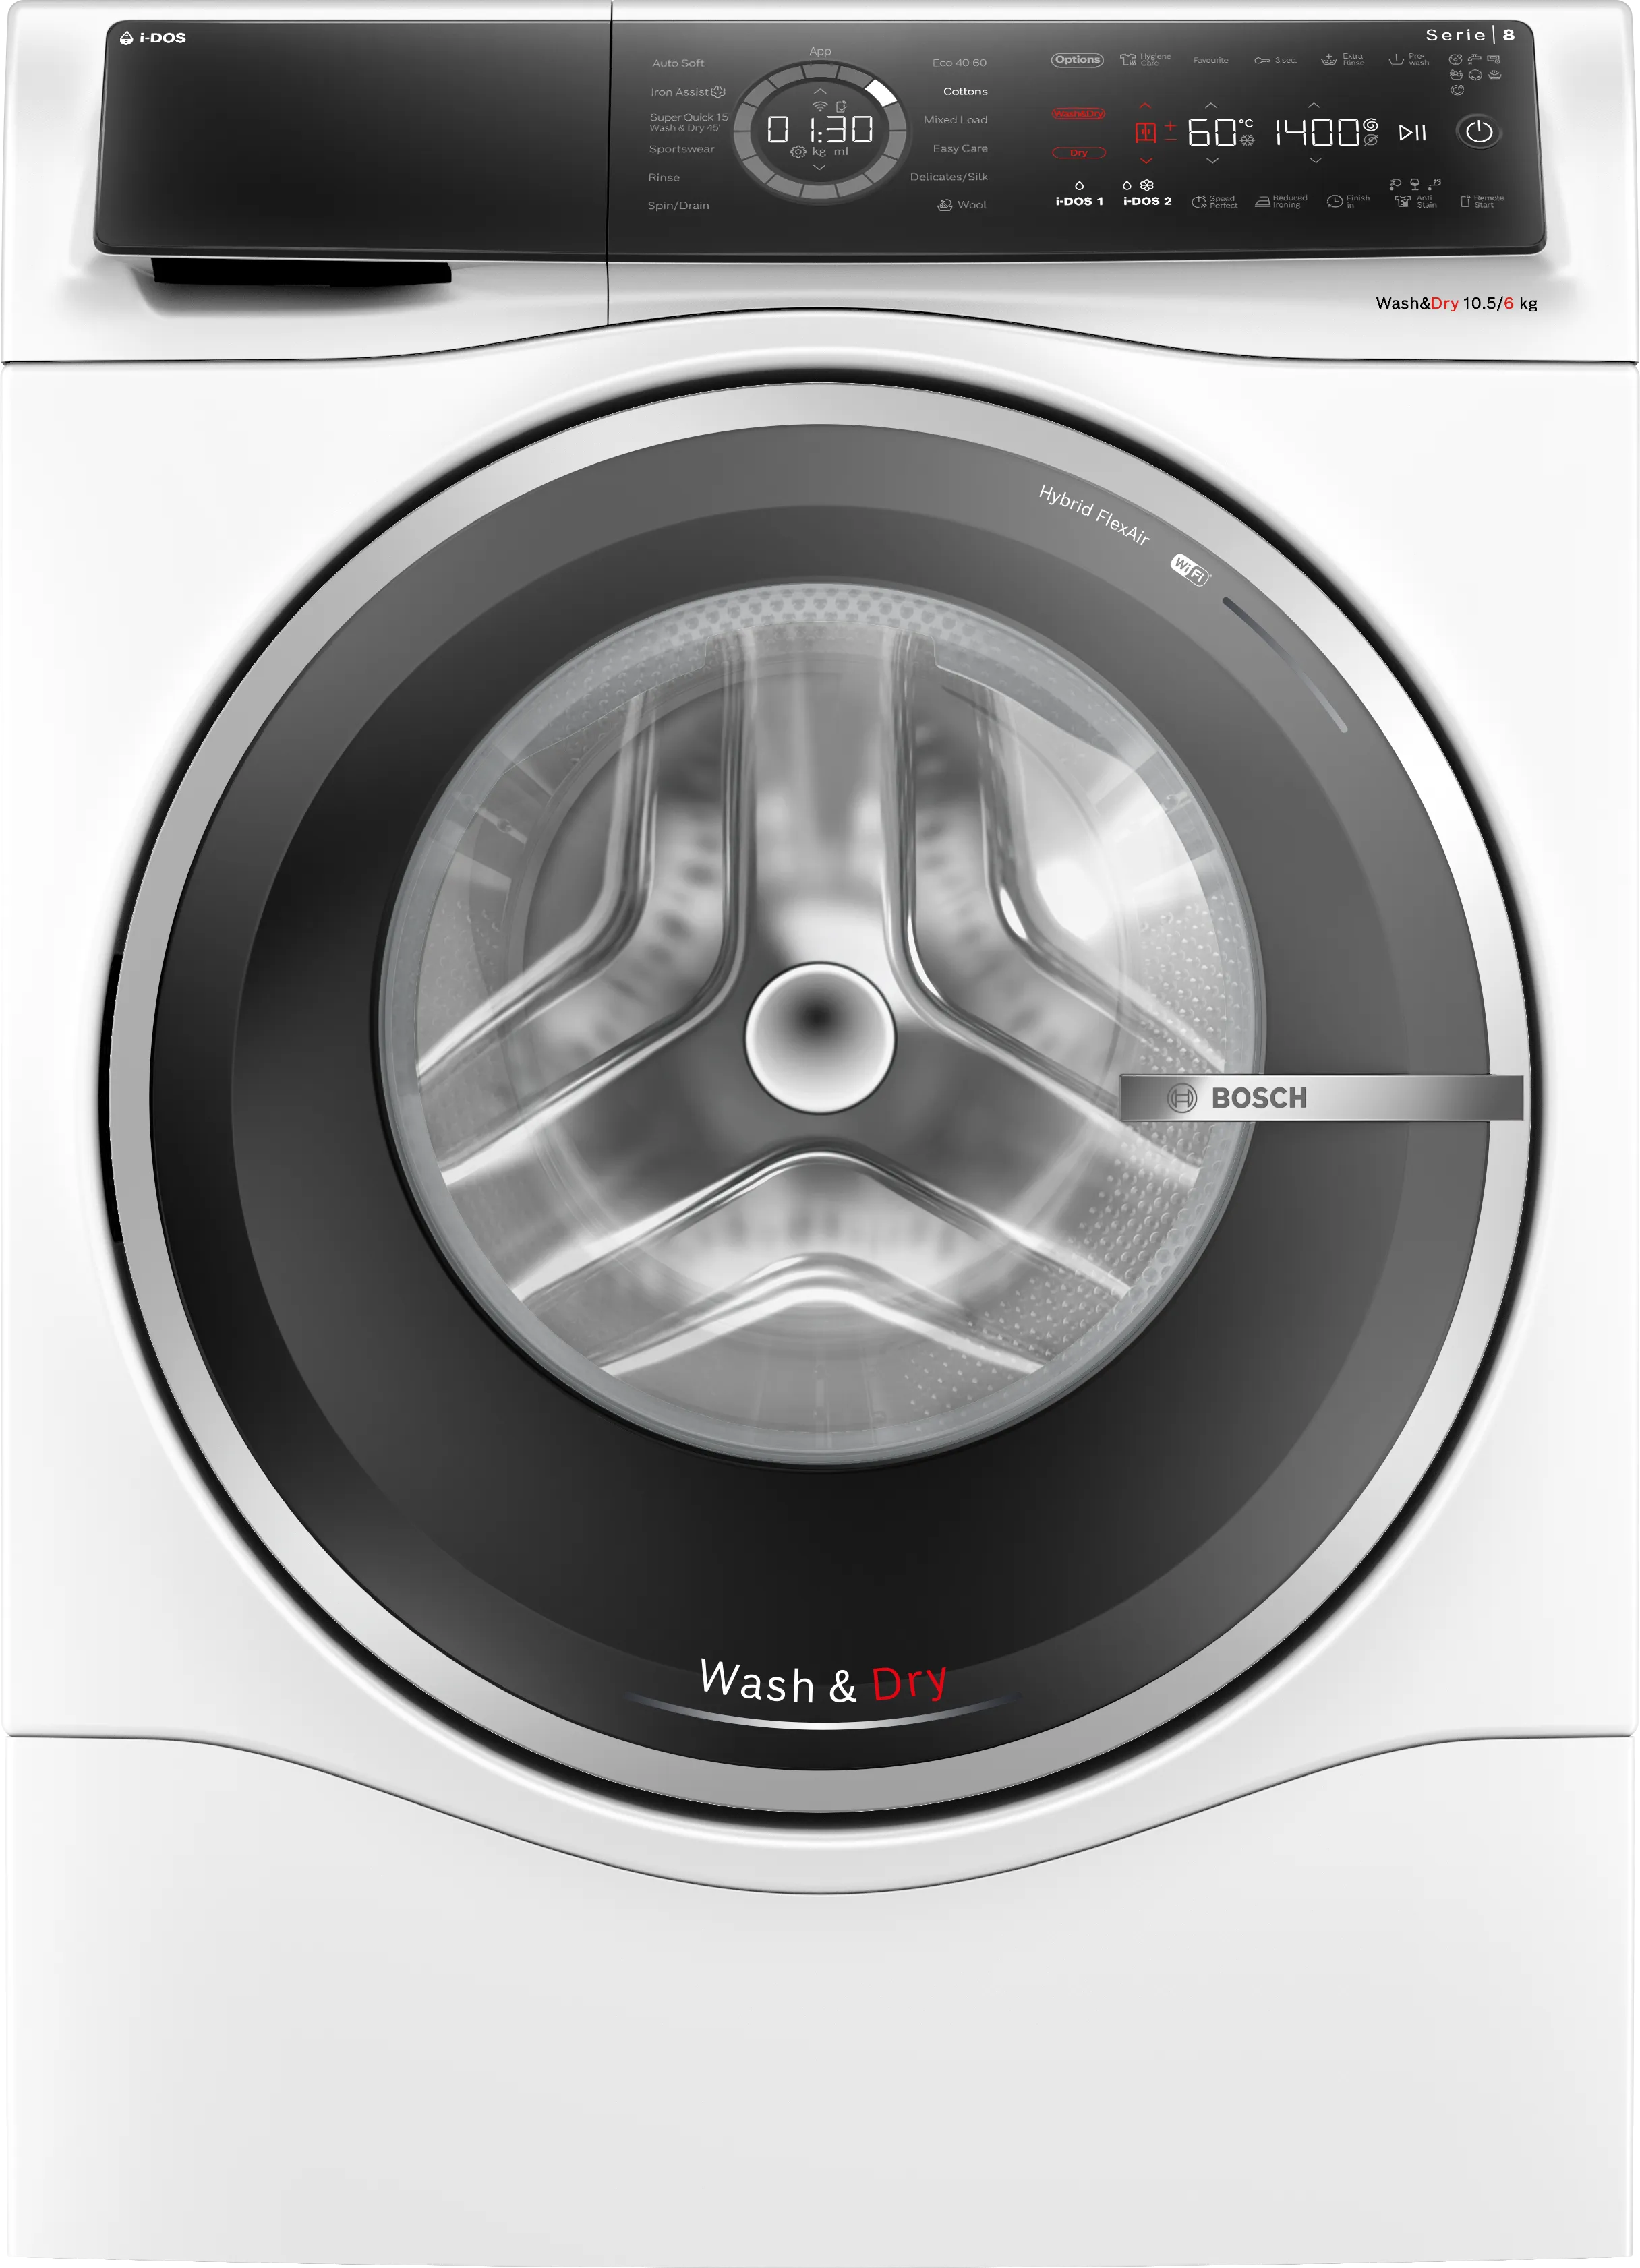 Series 8 Washer dryer 10.5/6 kg 1400 rpm 